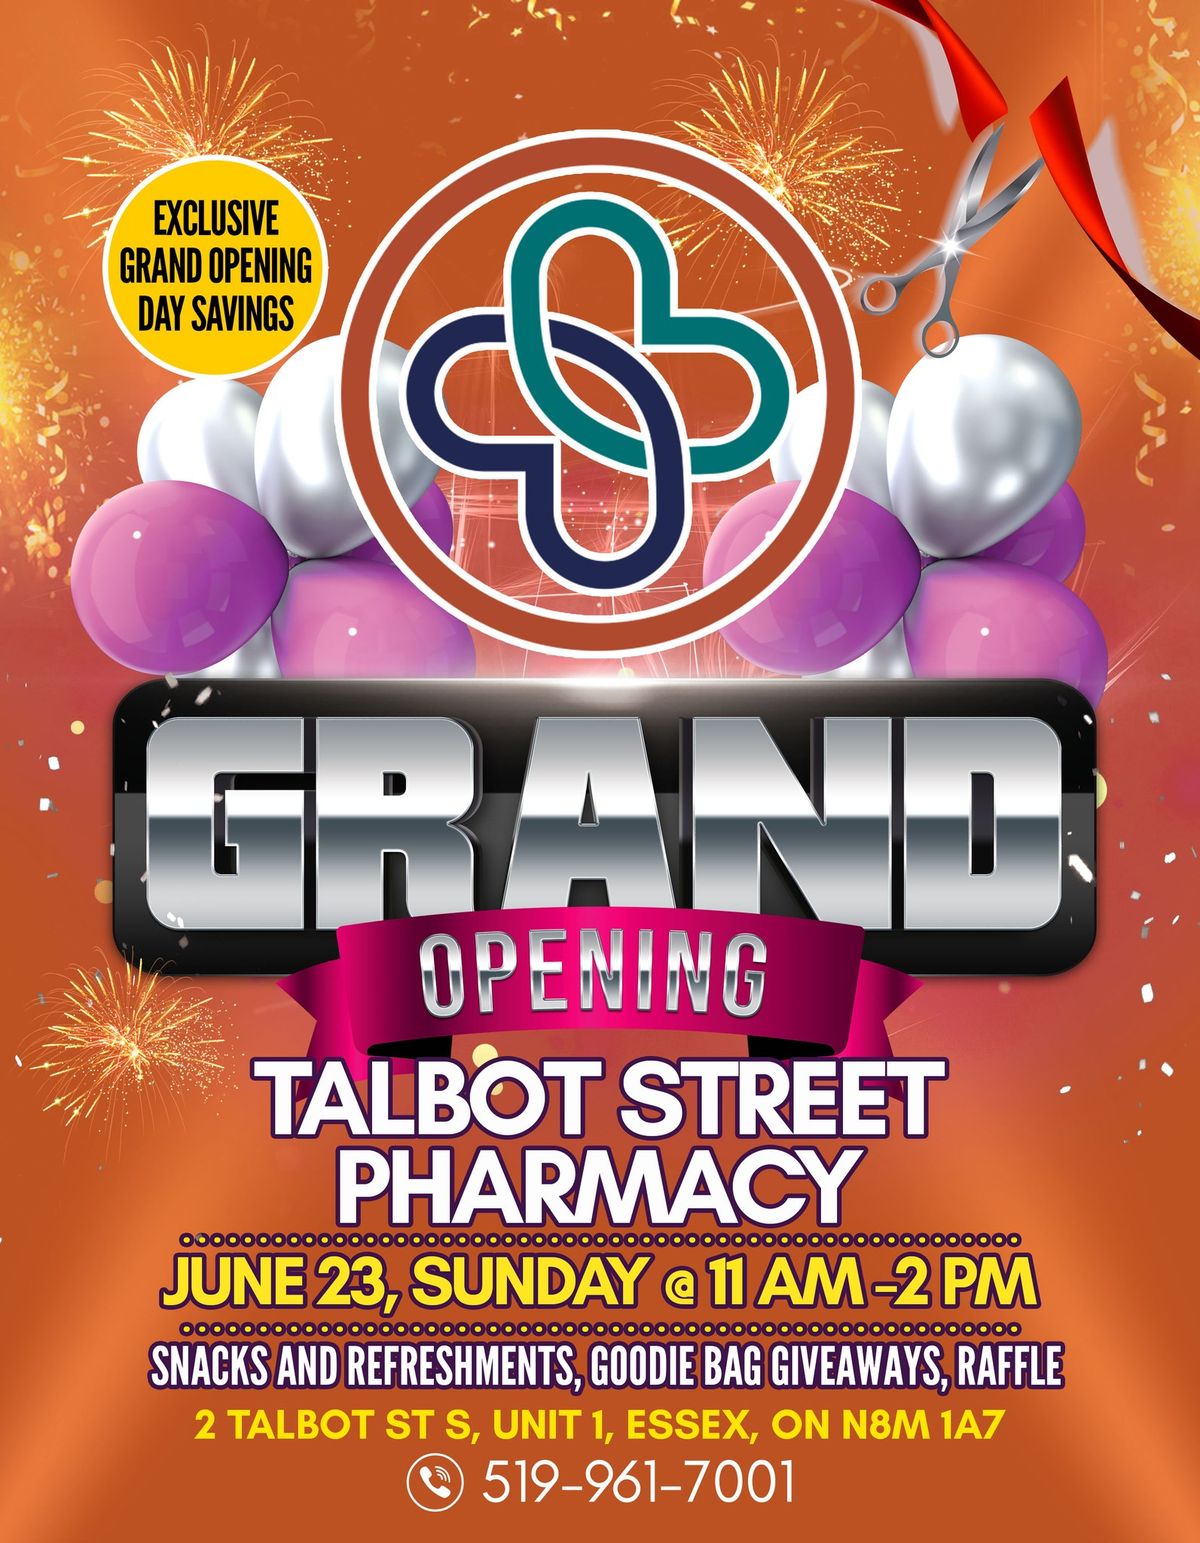 Grand Opening of Talbot Street Pharmacy